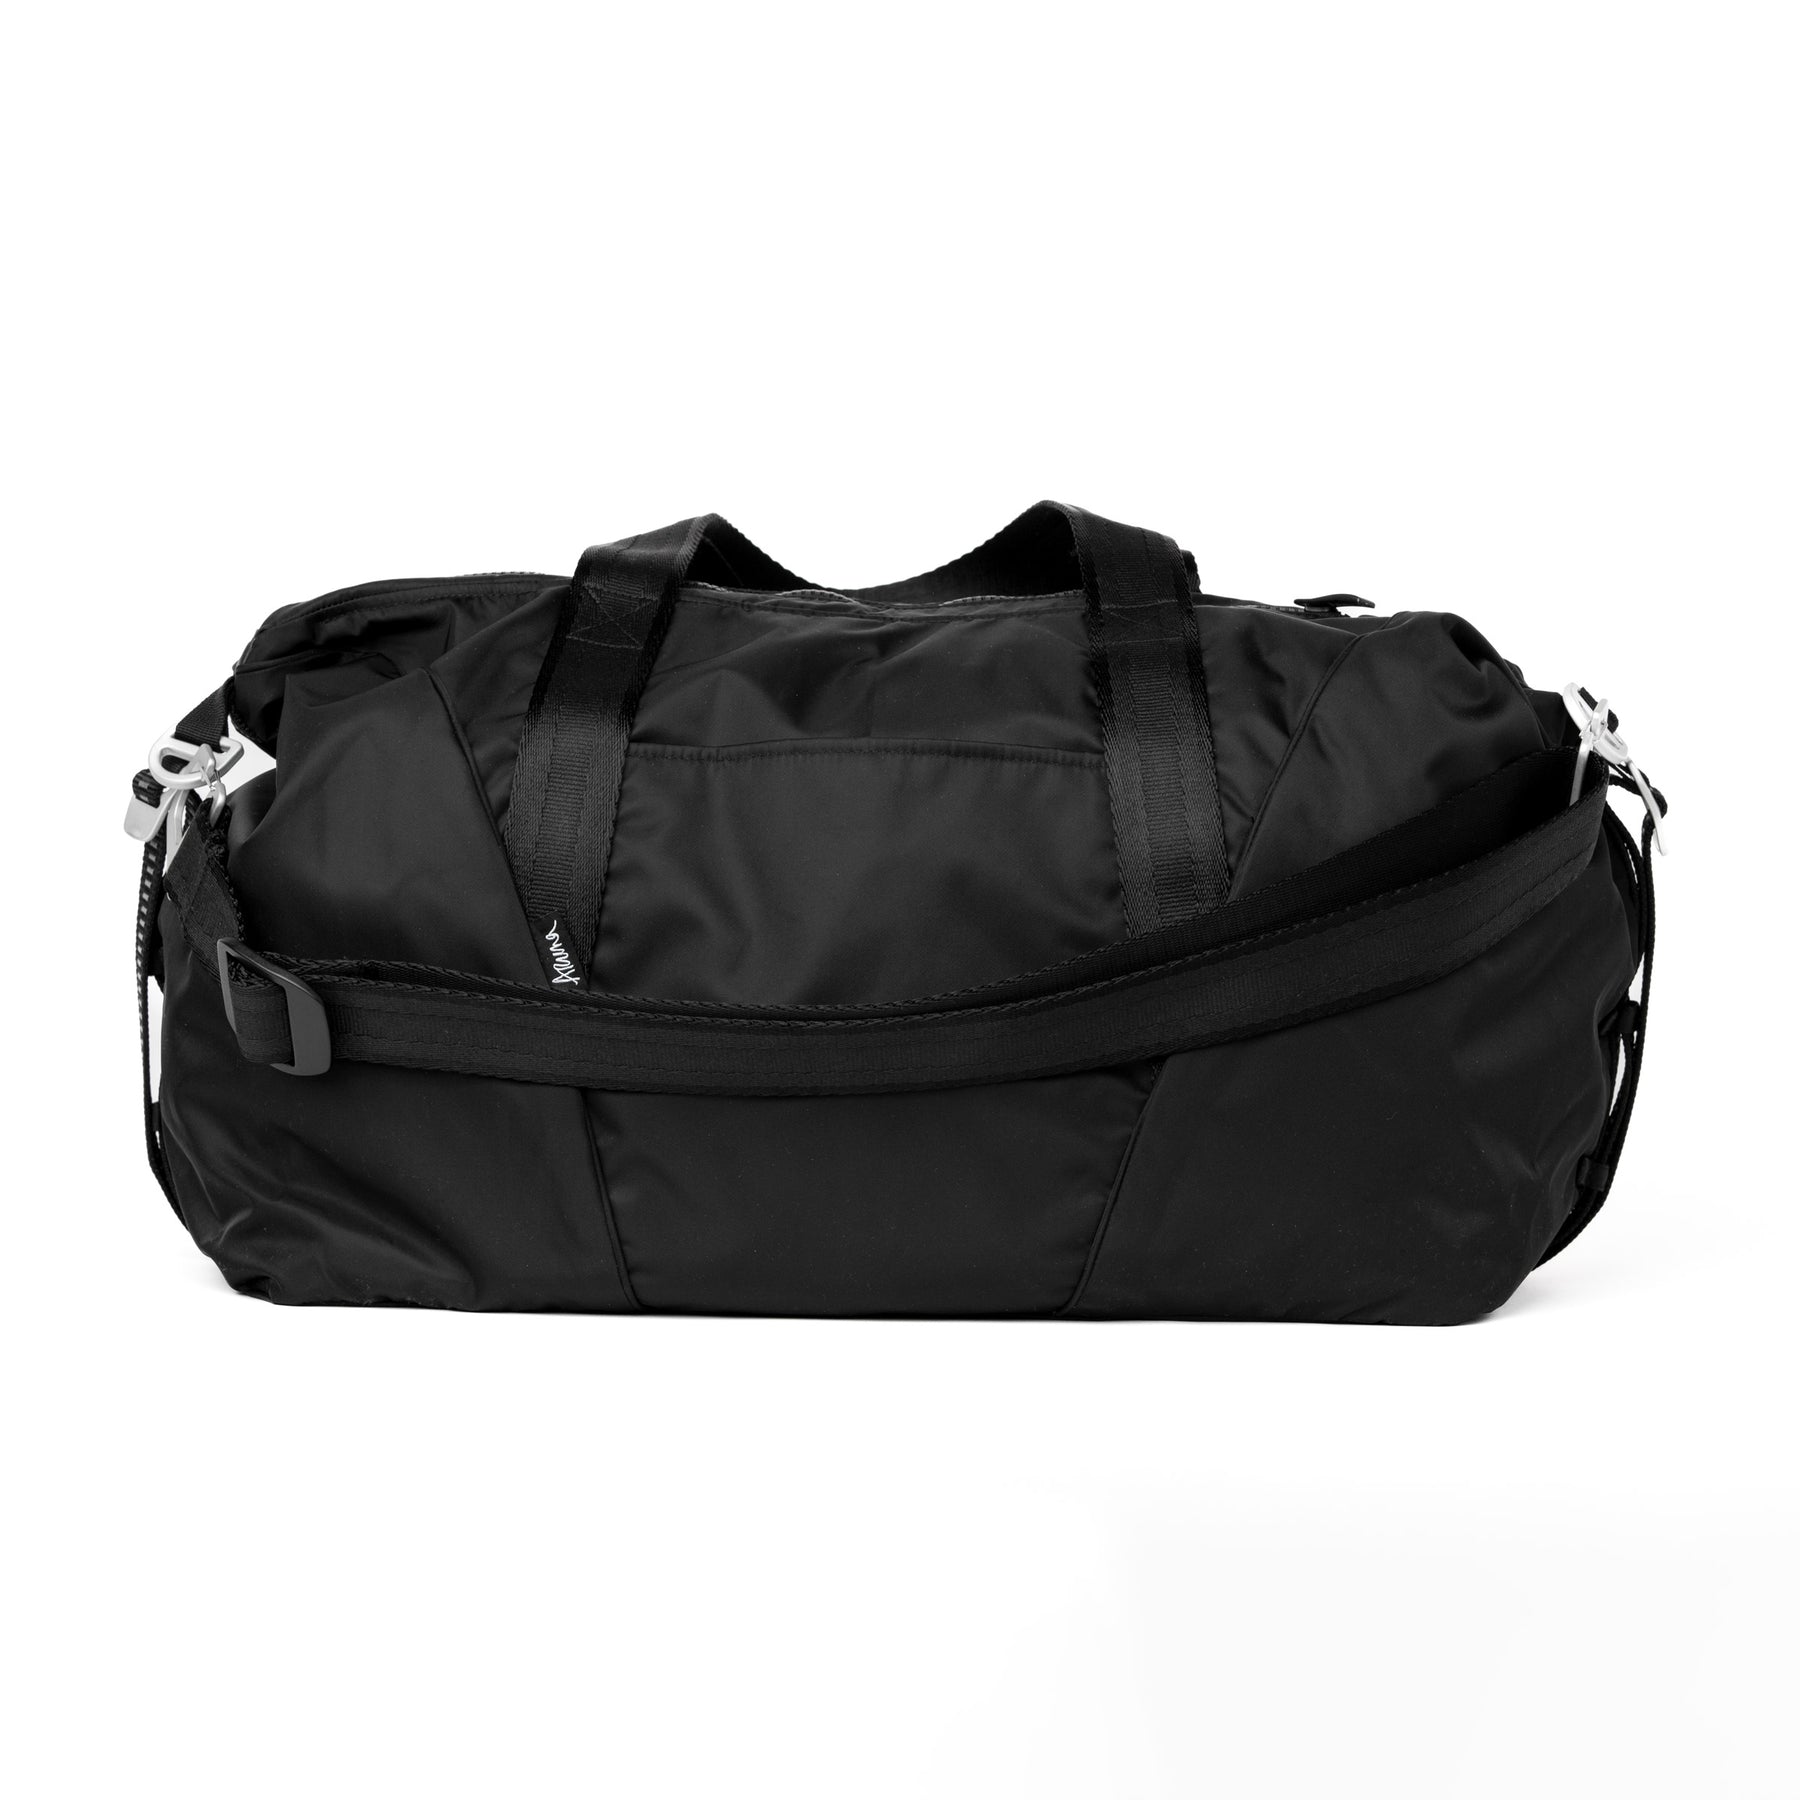 Aruna Women's Large Travel Duffel/Weekender Bag, 35L, Water-resistant ...